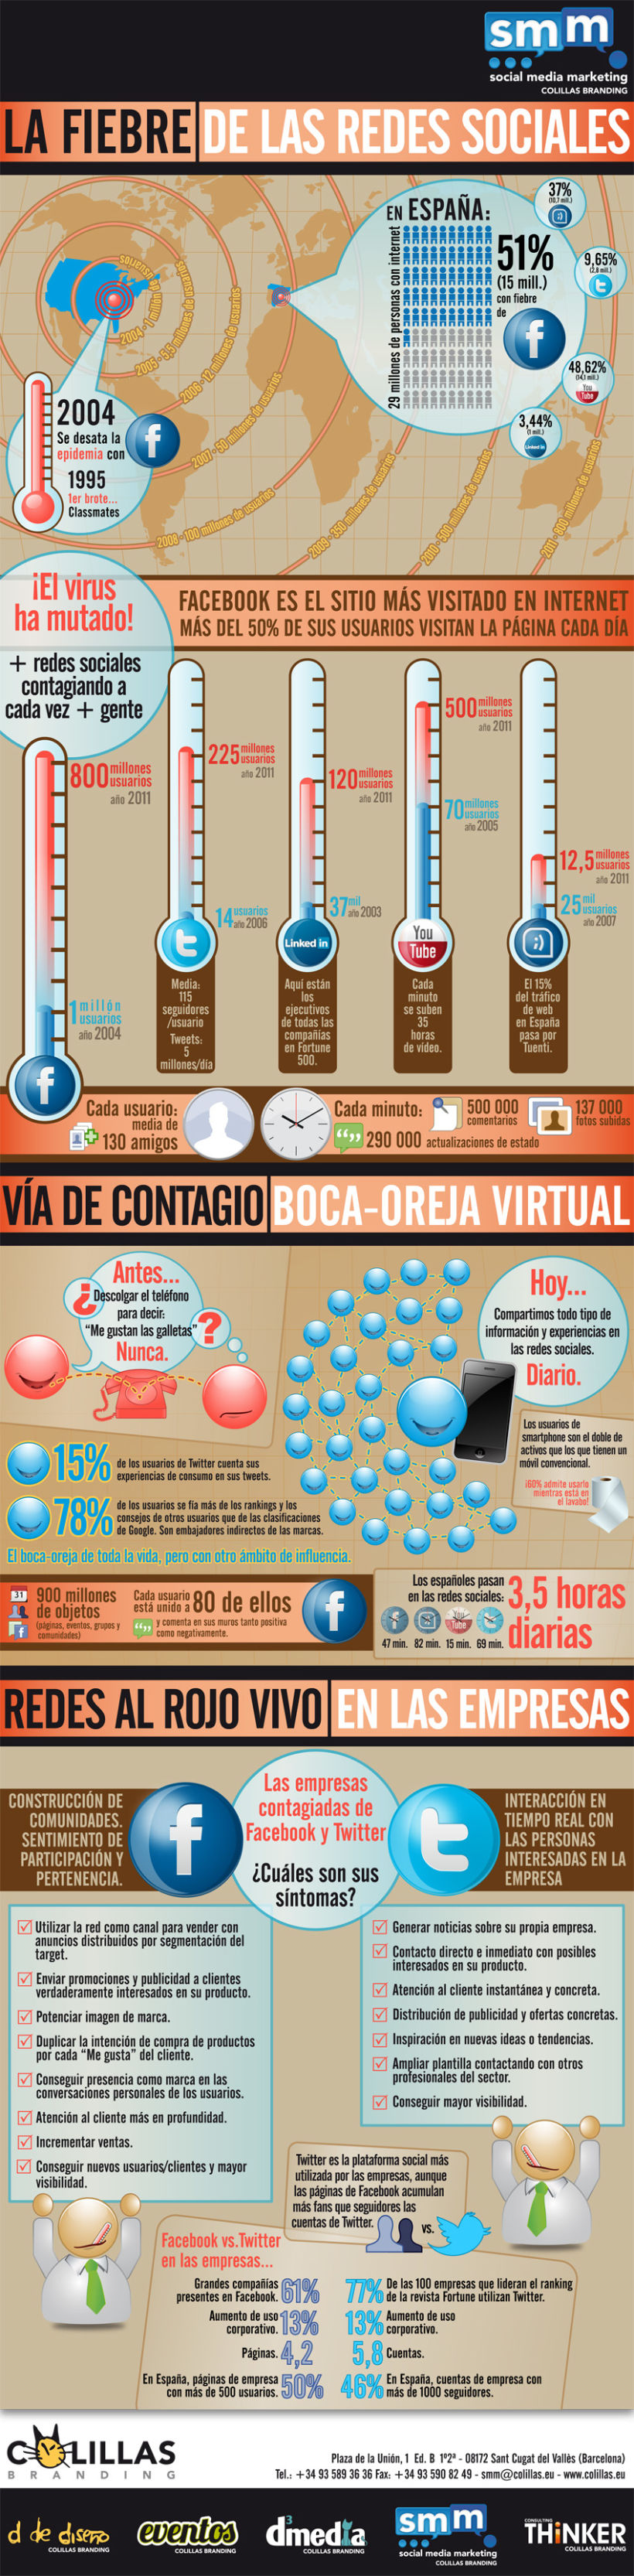 Infografía: La Fiebre de las Redes Sociales (2011) 0